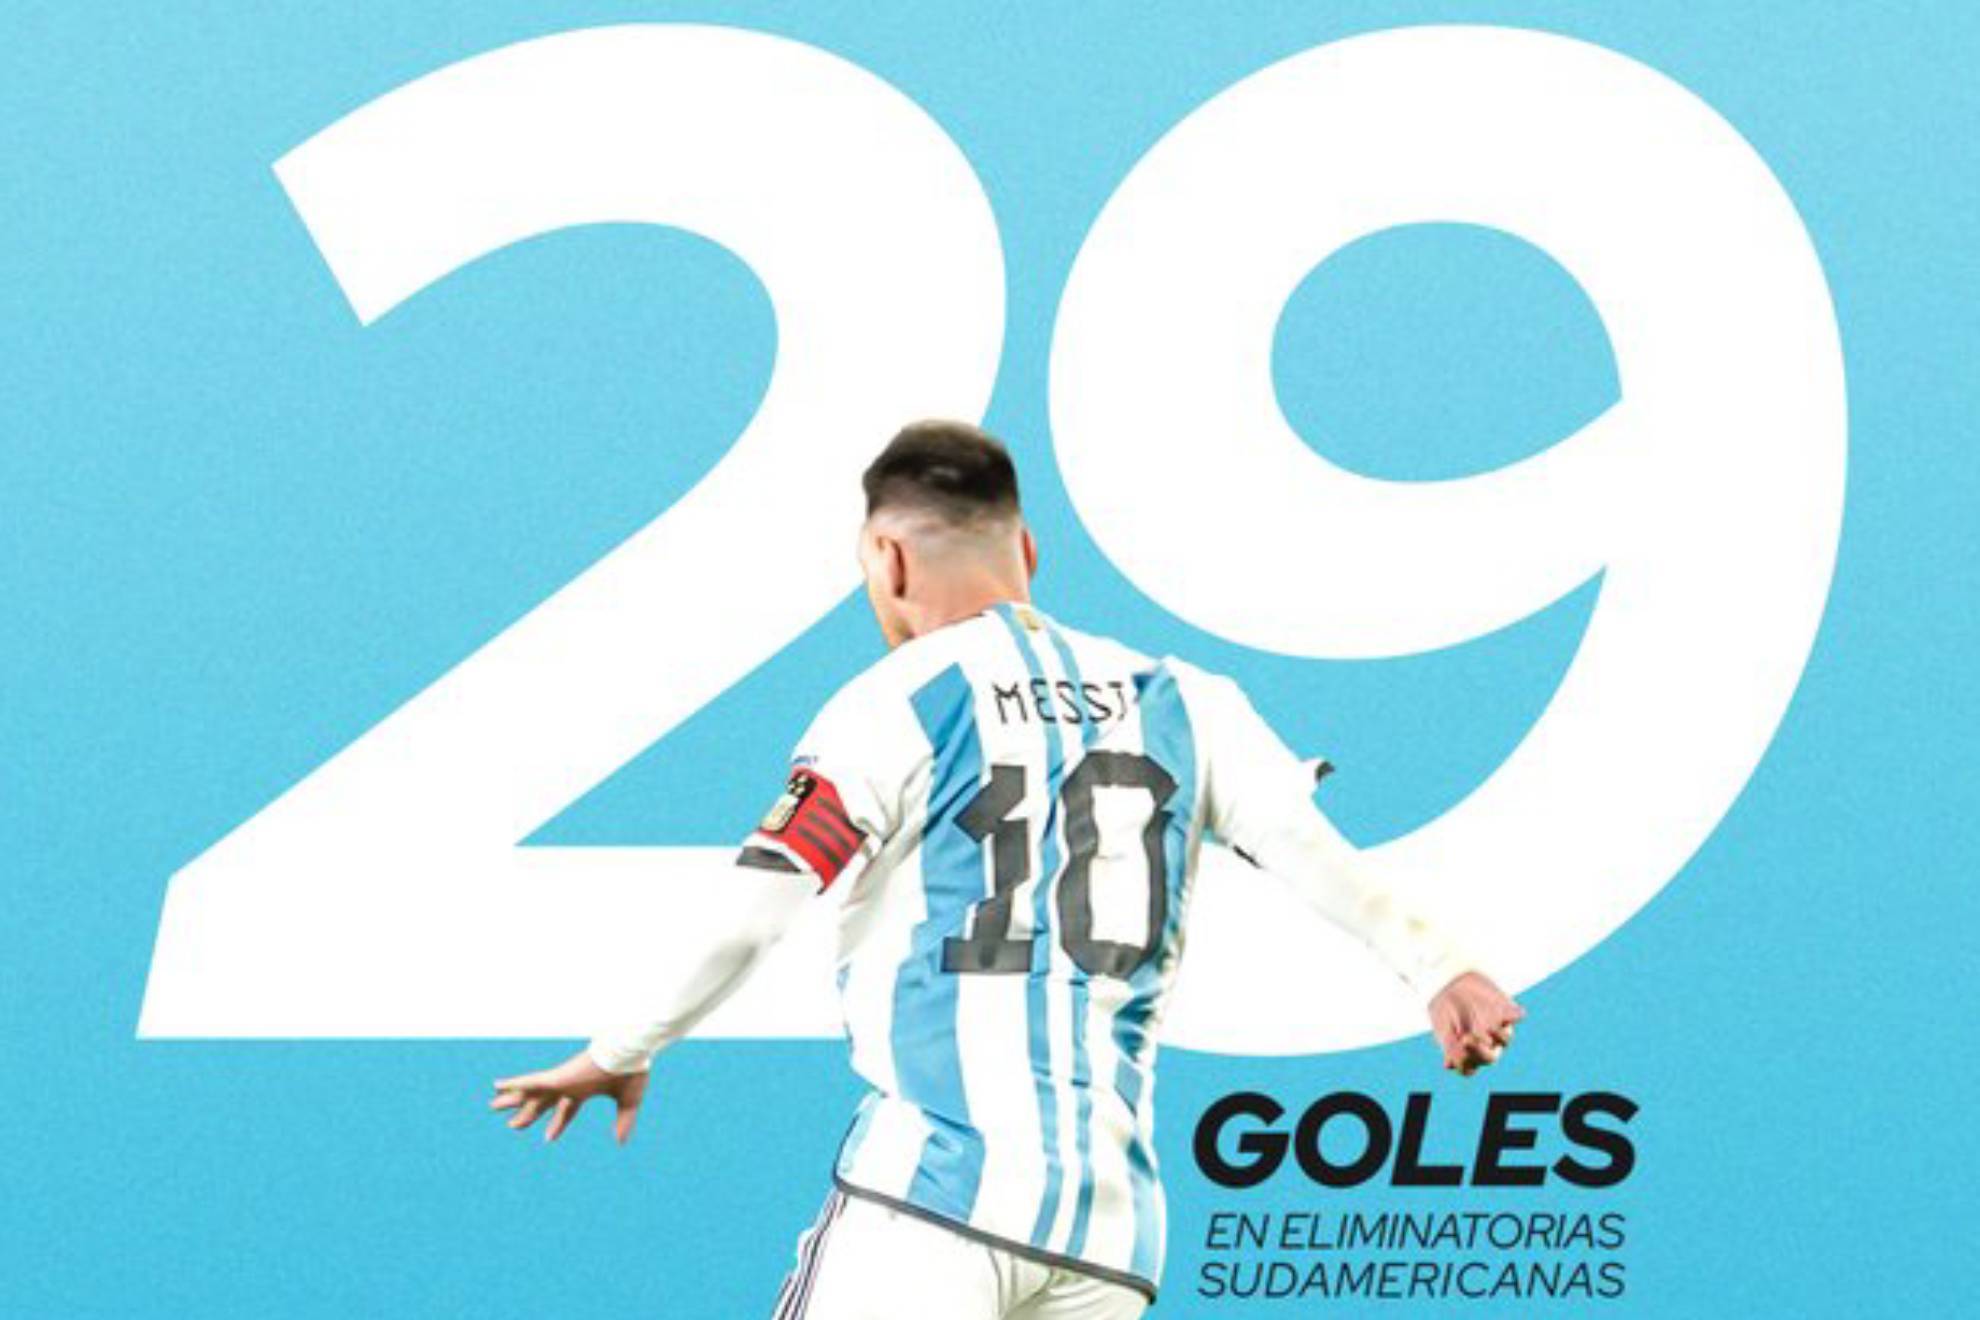 Messi iguala un récord goleador de Luis Suárez en las eliminatorias sudamericanas: "Es un placer"